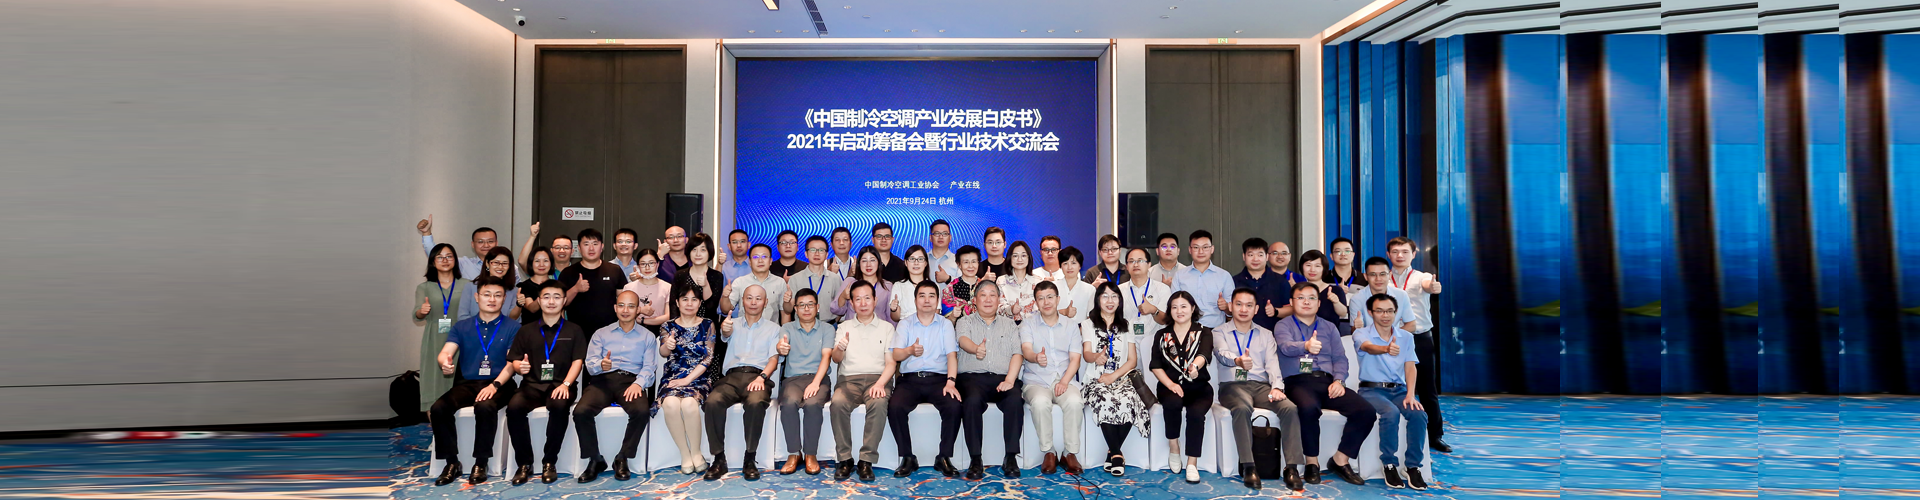 2021年9月24日上午，《中国制冷空调产业发展白皮书》2021年启动筹备会暨行业技术交流会在杭州召开。我协会邵乃宇秘书